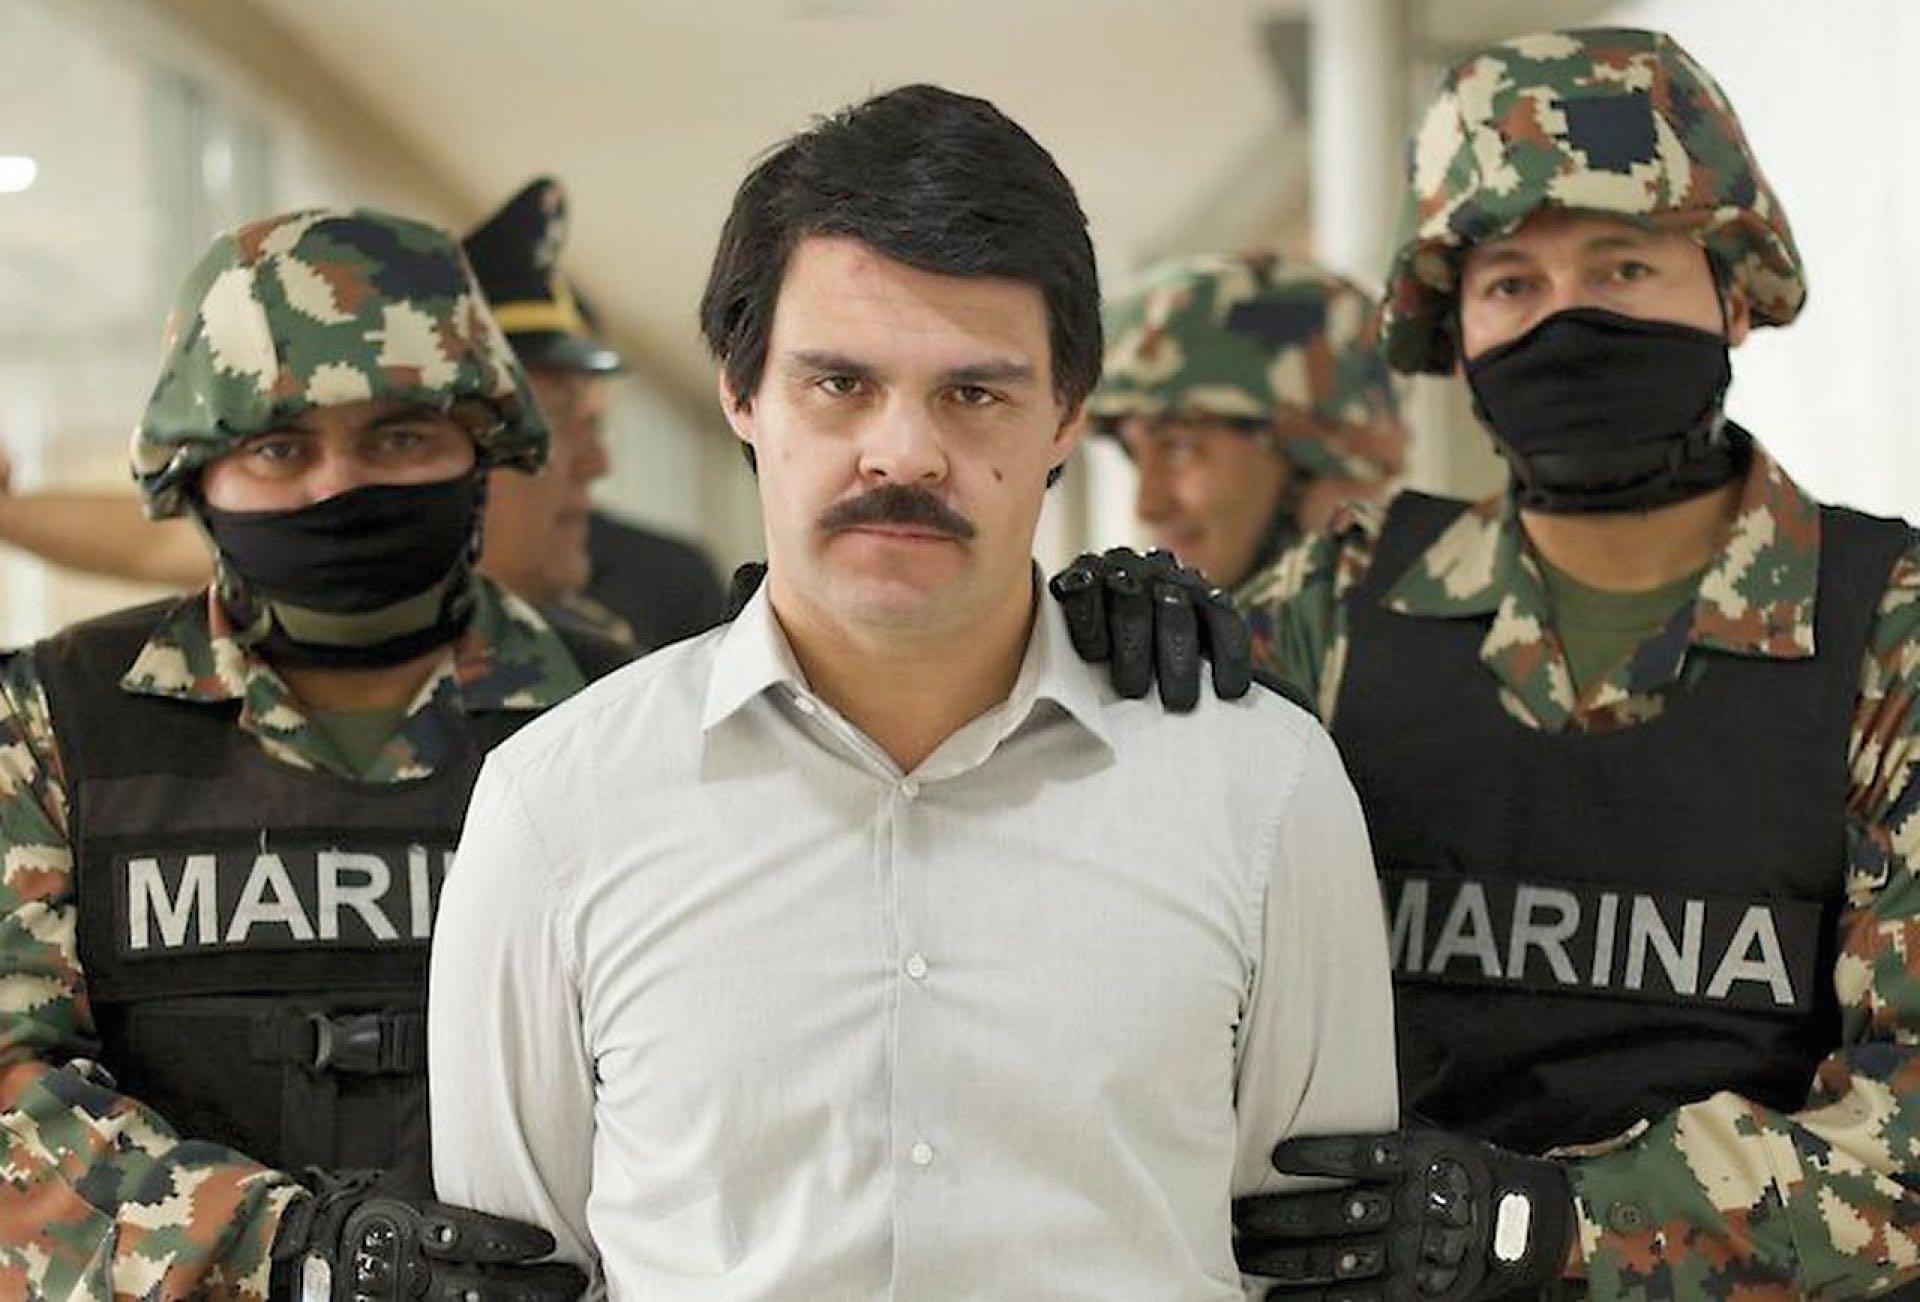  El Chapo, una novela narco que es marca registrada de la ficción mexicana.